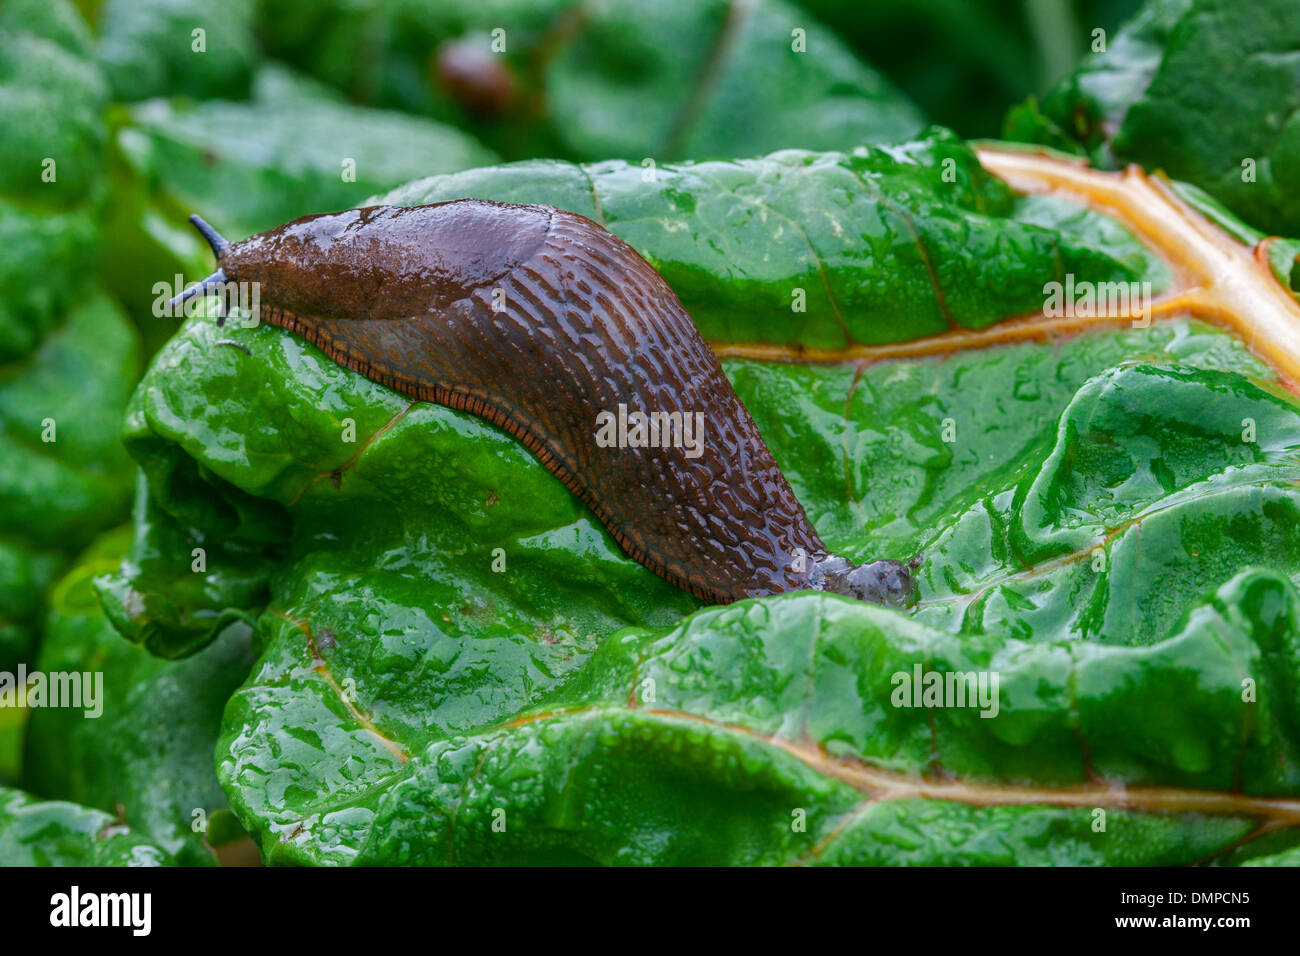 Large red slug / European red slug (Arion rufus) on vegetables, pests in vegetable garden Stock Photo